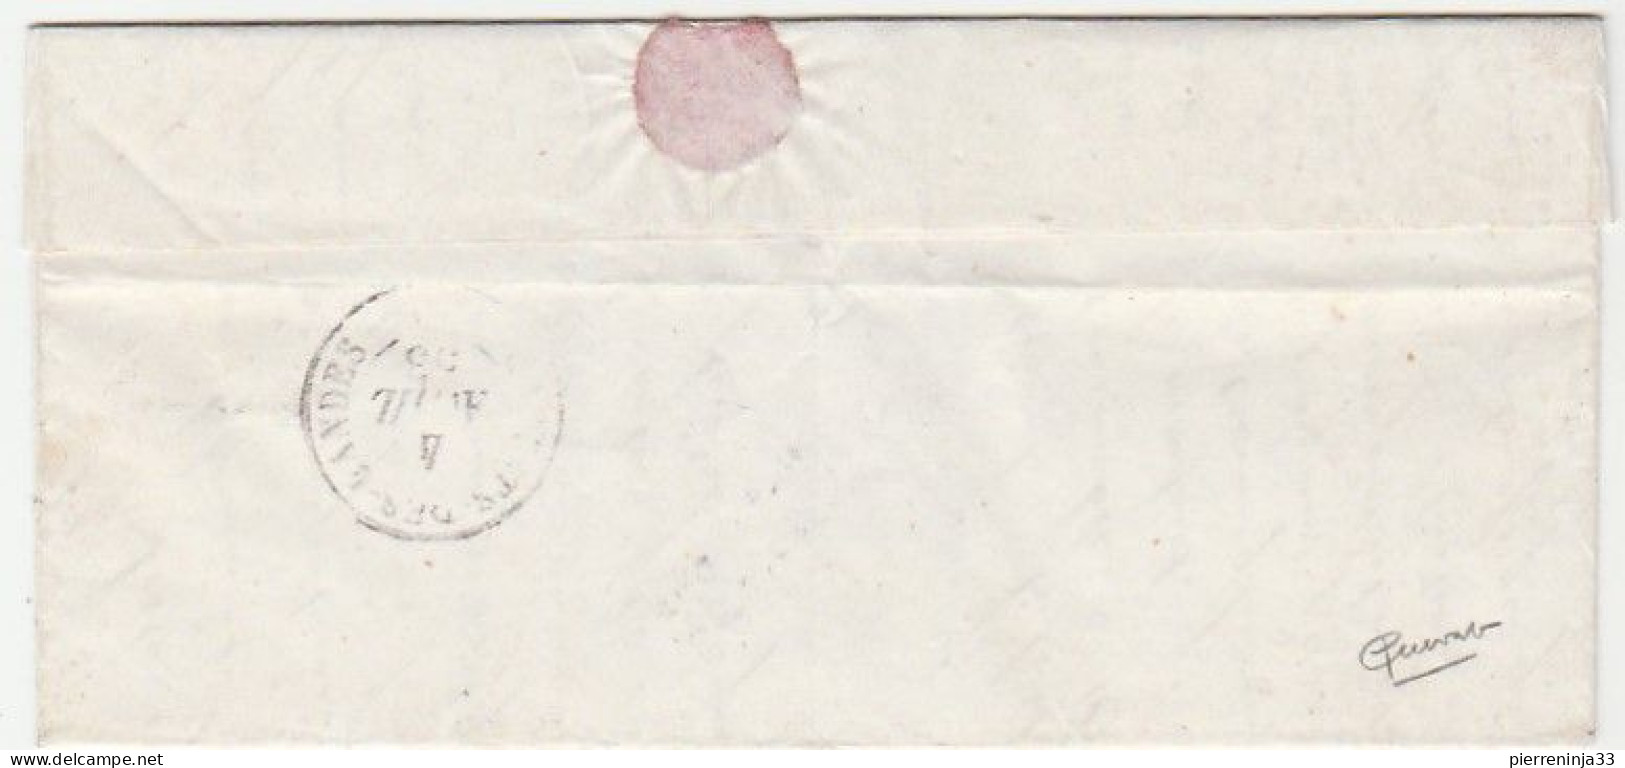 Lettre Avec  Napoléon N°10, Cursive " 39 Labastide D'Armagnac", Landes, Oblitération Roquefort - 1852 Louis-Napoleon